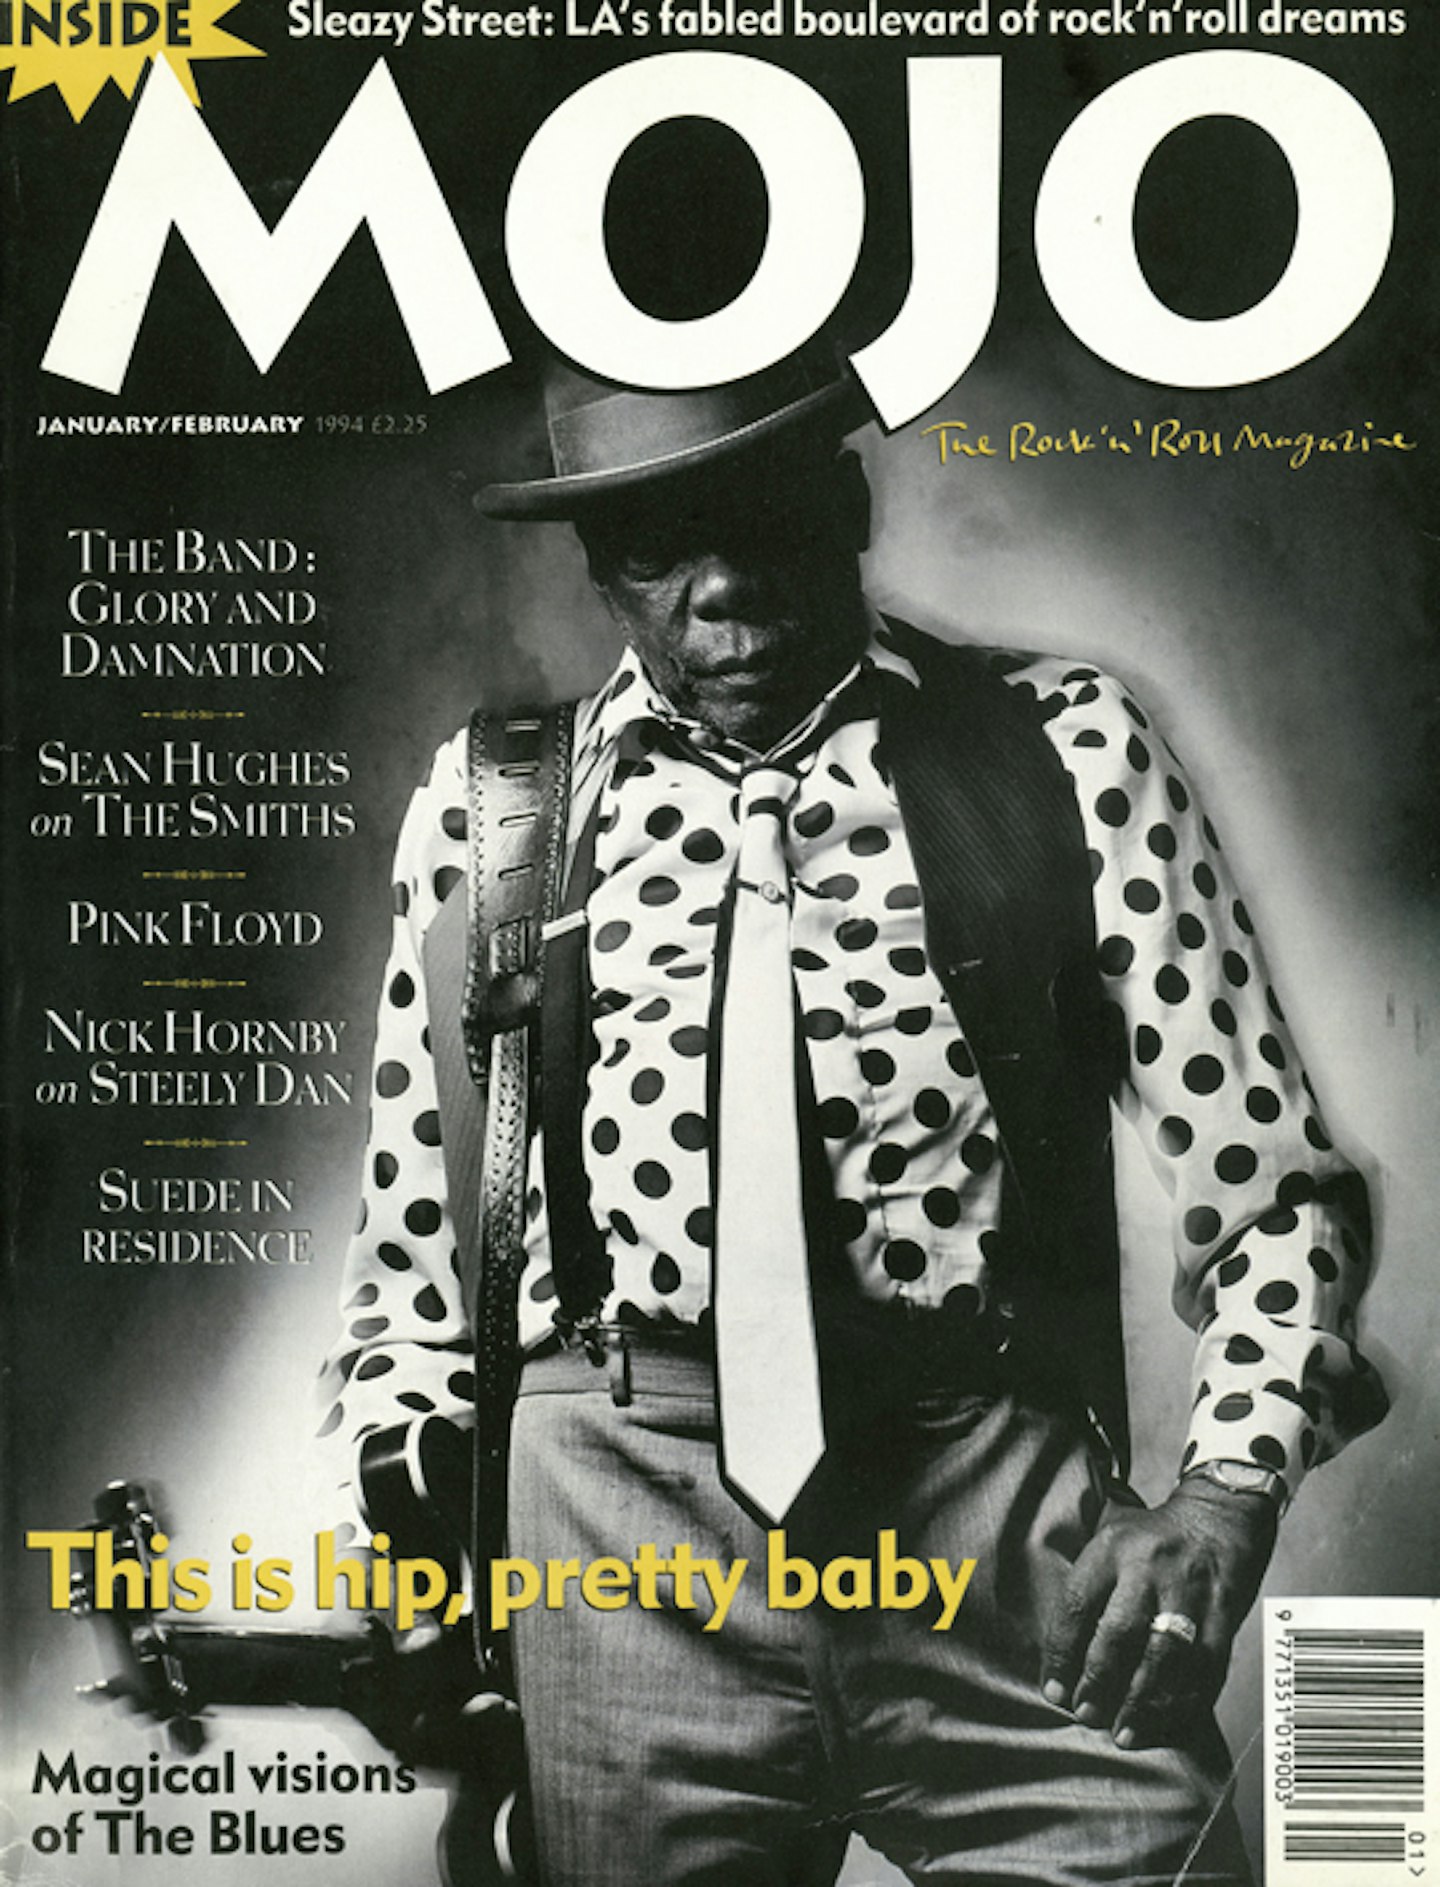 MOJO Issue 3 / January & February 1994